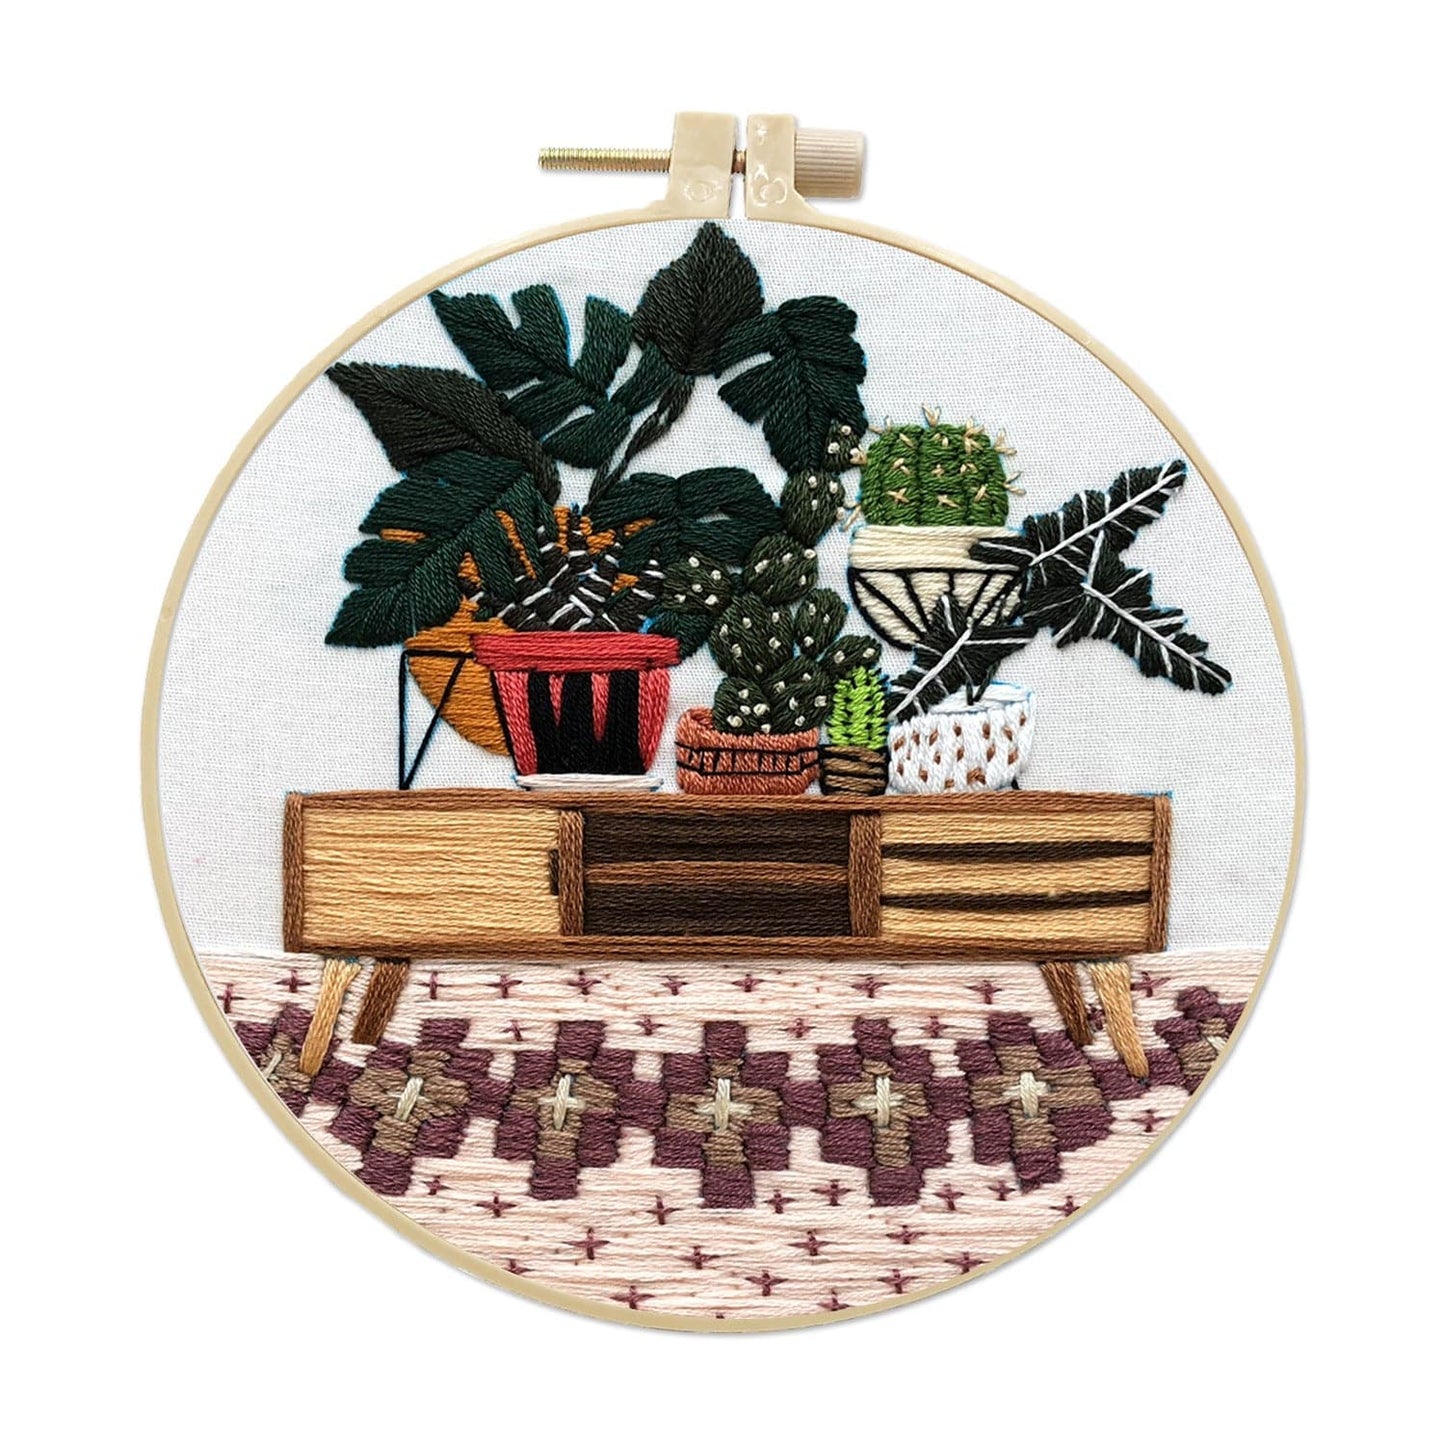 Plants - Embroidery ktclubs.com